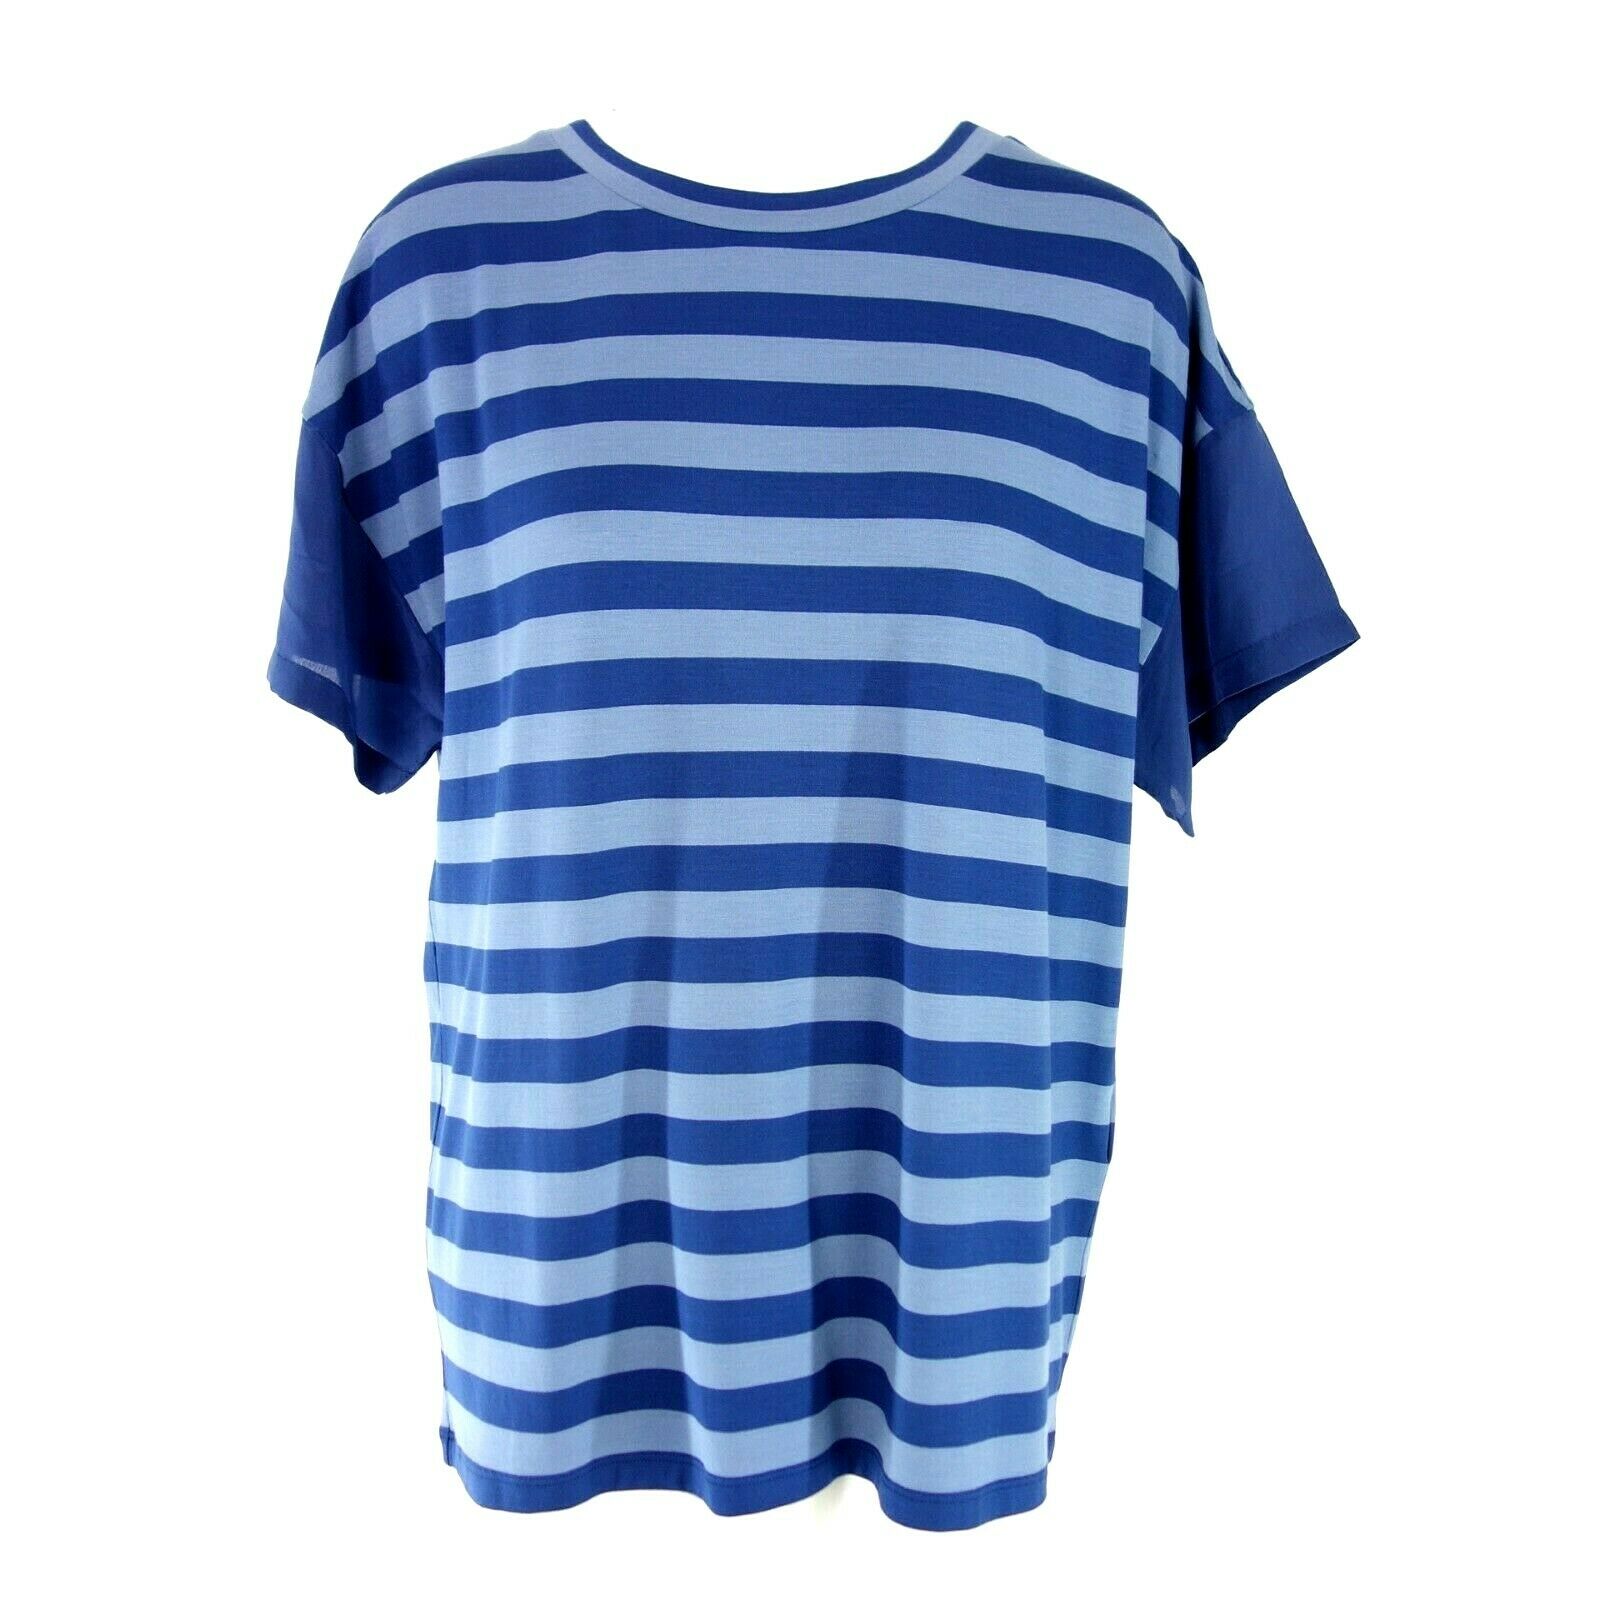 Max Mara Weekend Damen T Shirt T-Shirt Oberteil Damenshirt Sommershirt Blau Neu - 38